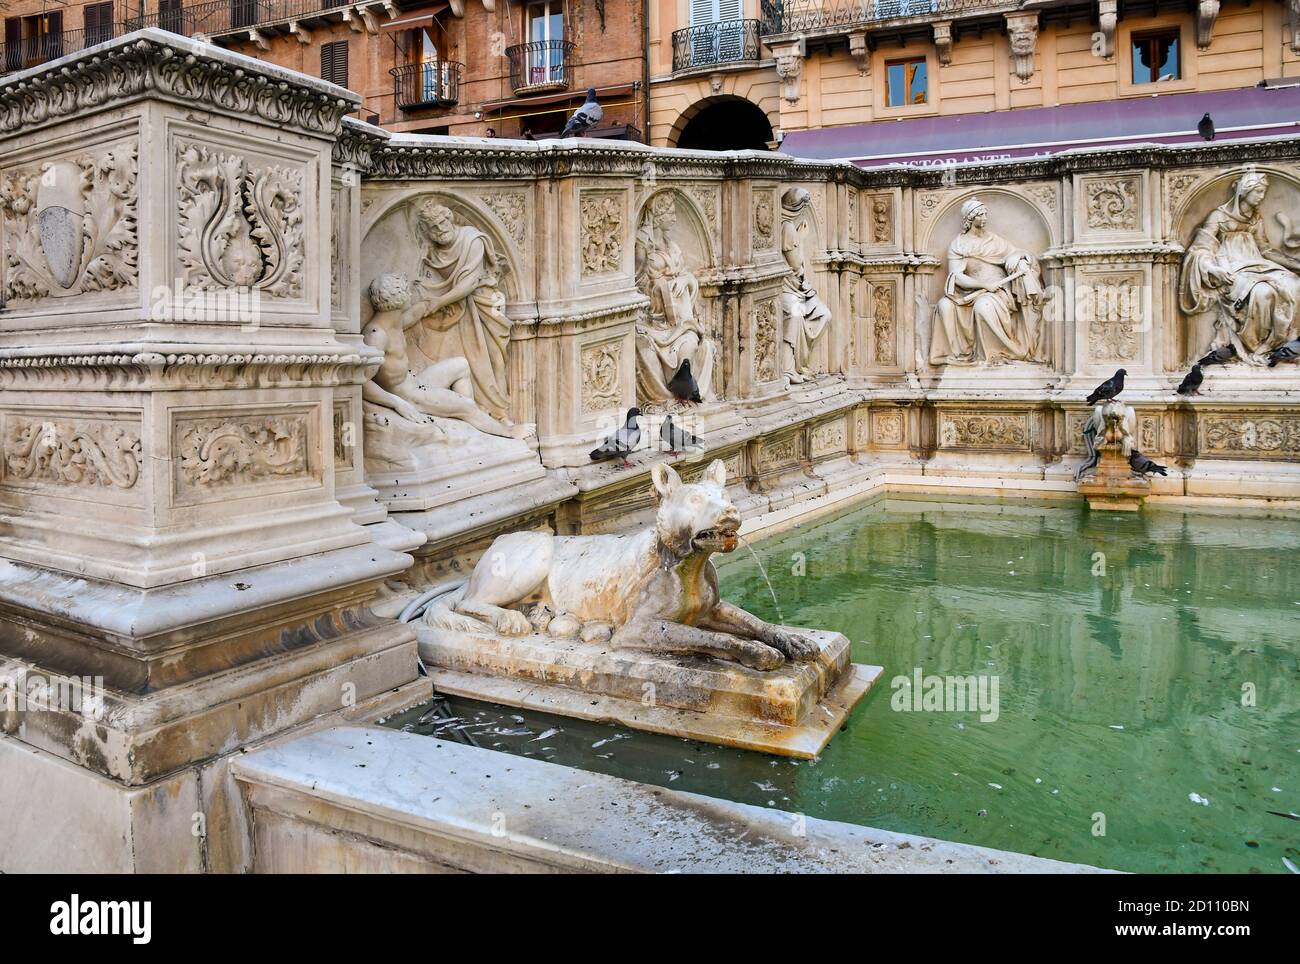 Détail de la fonte Gaia, une fontaine monumentale sur la place Piazza del Campo au centre de Sienne, site classé au patrimoine mondial de l'UNESCO, Toscane, Italie Banque D'Images